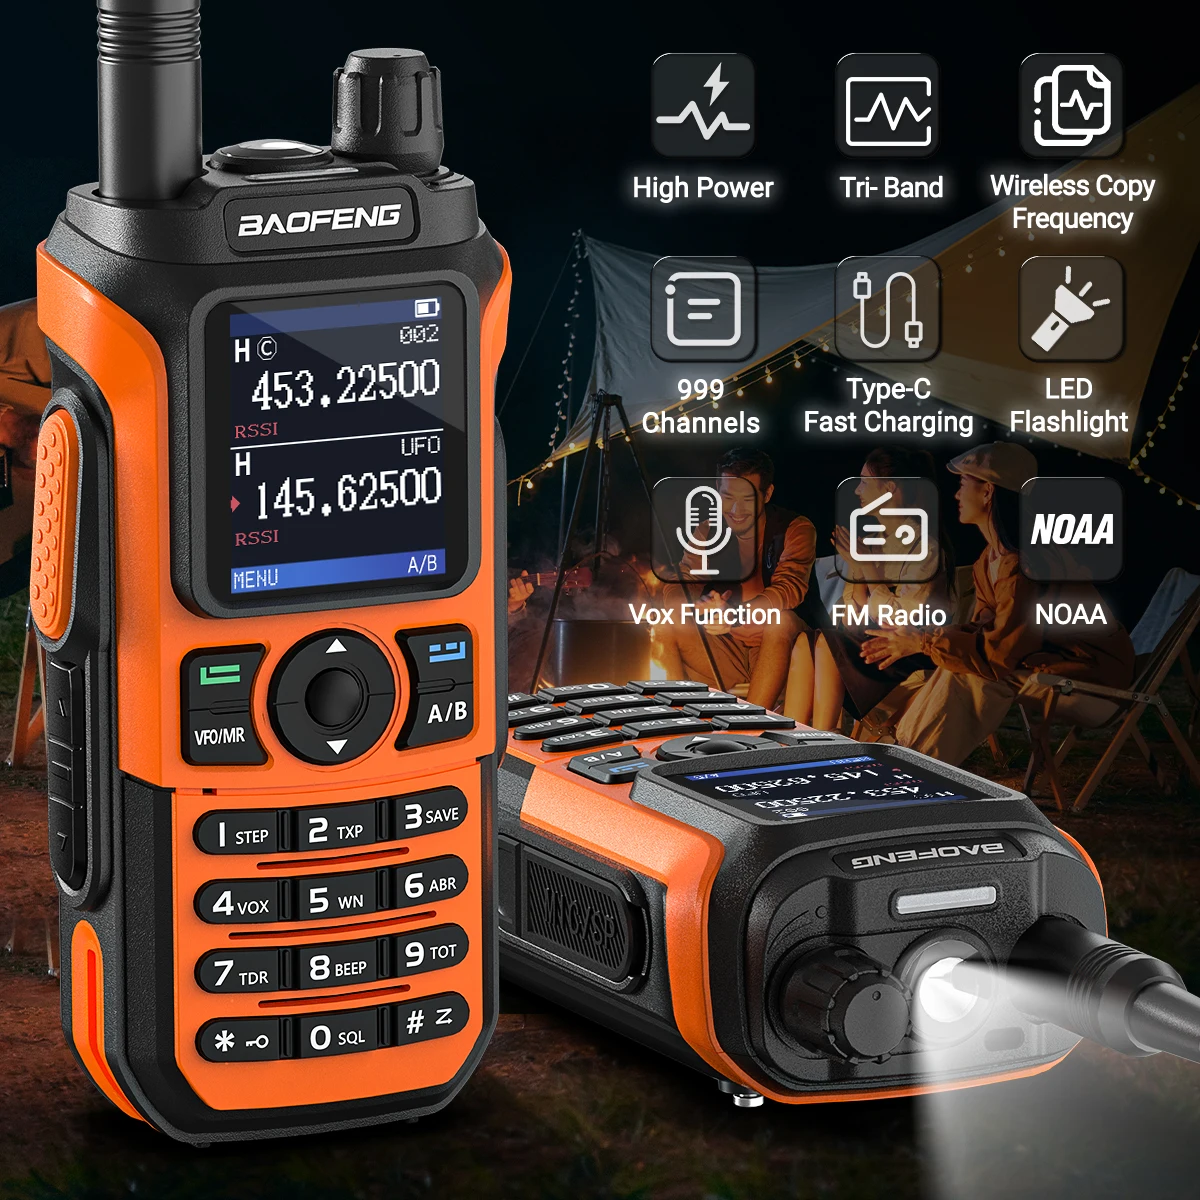 Baofeng UV-21 PRO V2 walkie talkie dlouhé rozsah bezdrátový kopie frekvence type-c nabíječka tri pás sytý vodotěsný dva způsob rádio